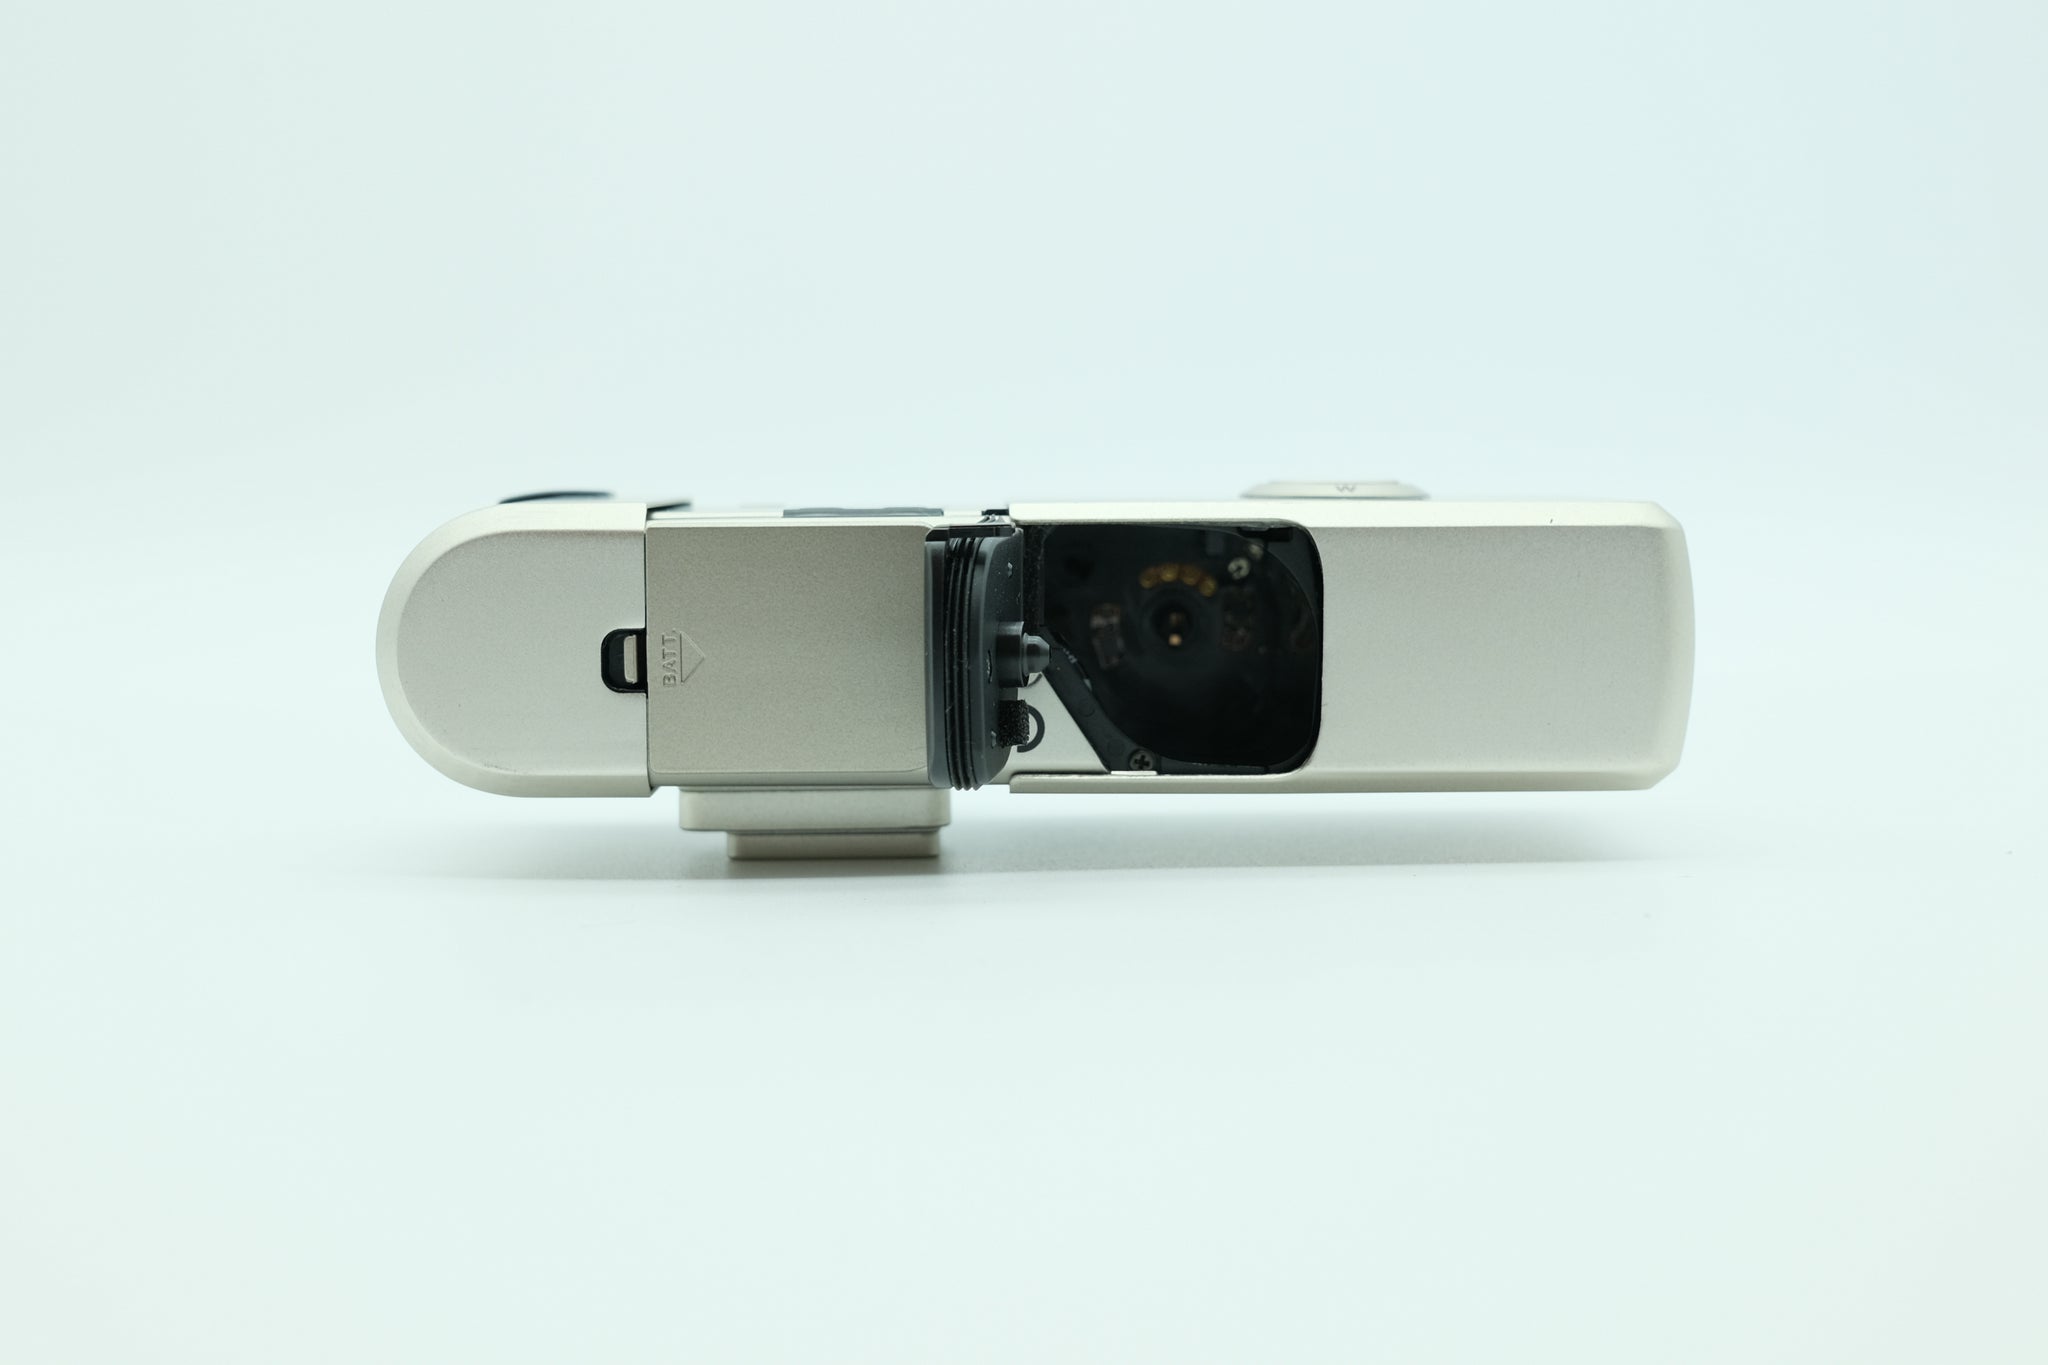 Fujifilm Tiara Nexia 2000 ixZ MRC - APS Film Camera - Excellent Cond